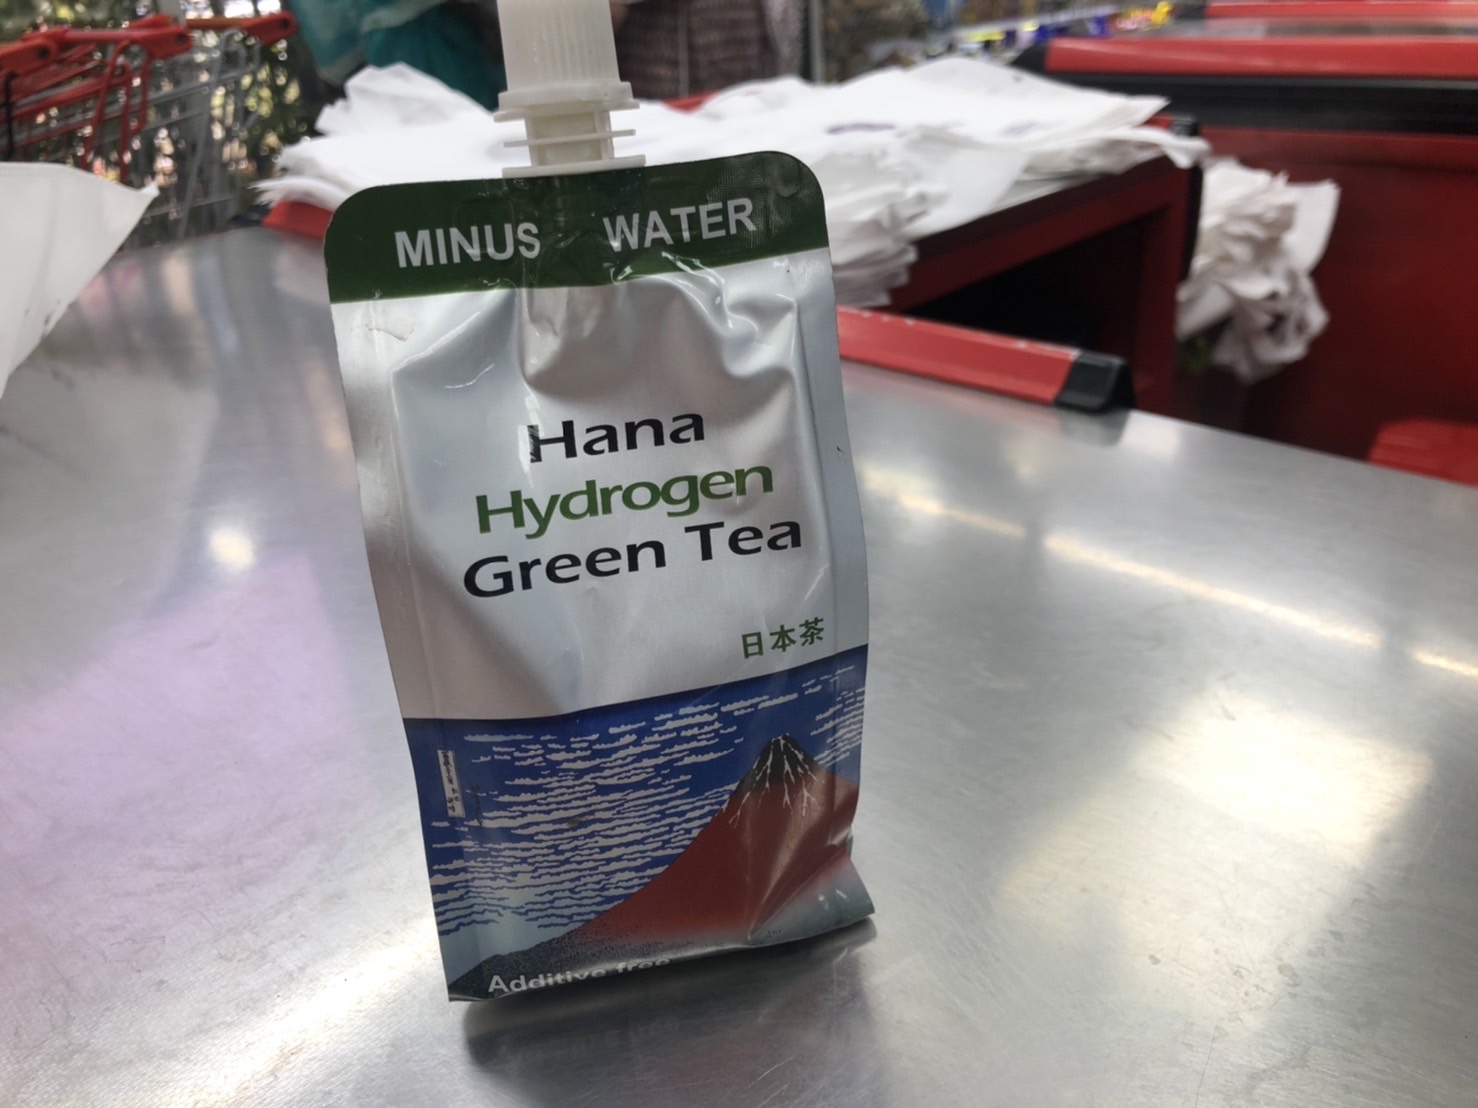 「ダッカで日本茶を発見!!」Hana Hydrogen Green Tea